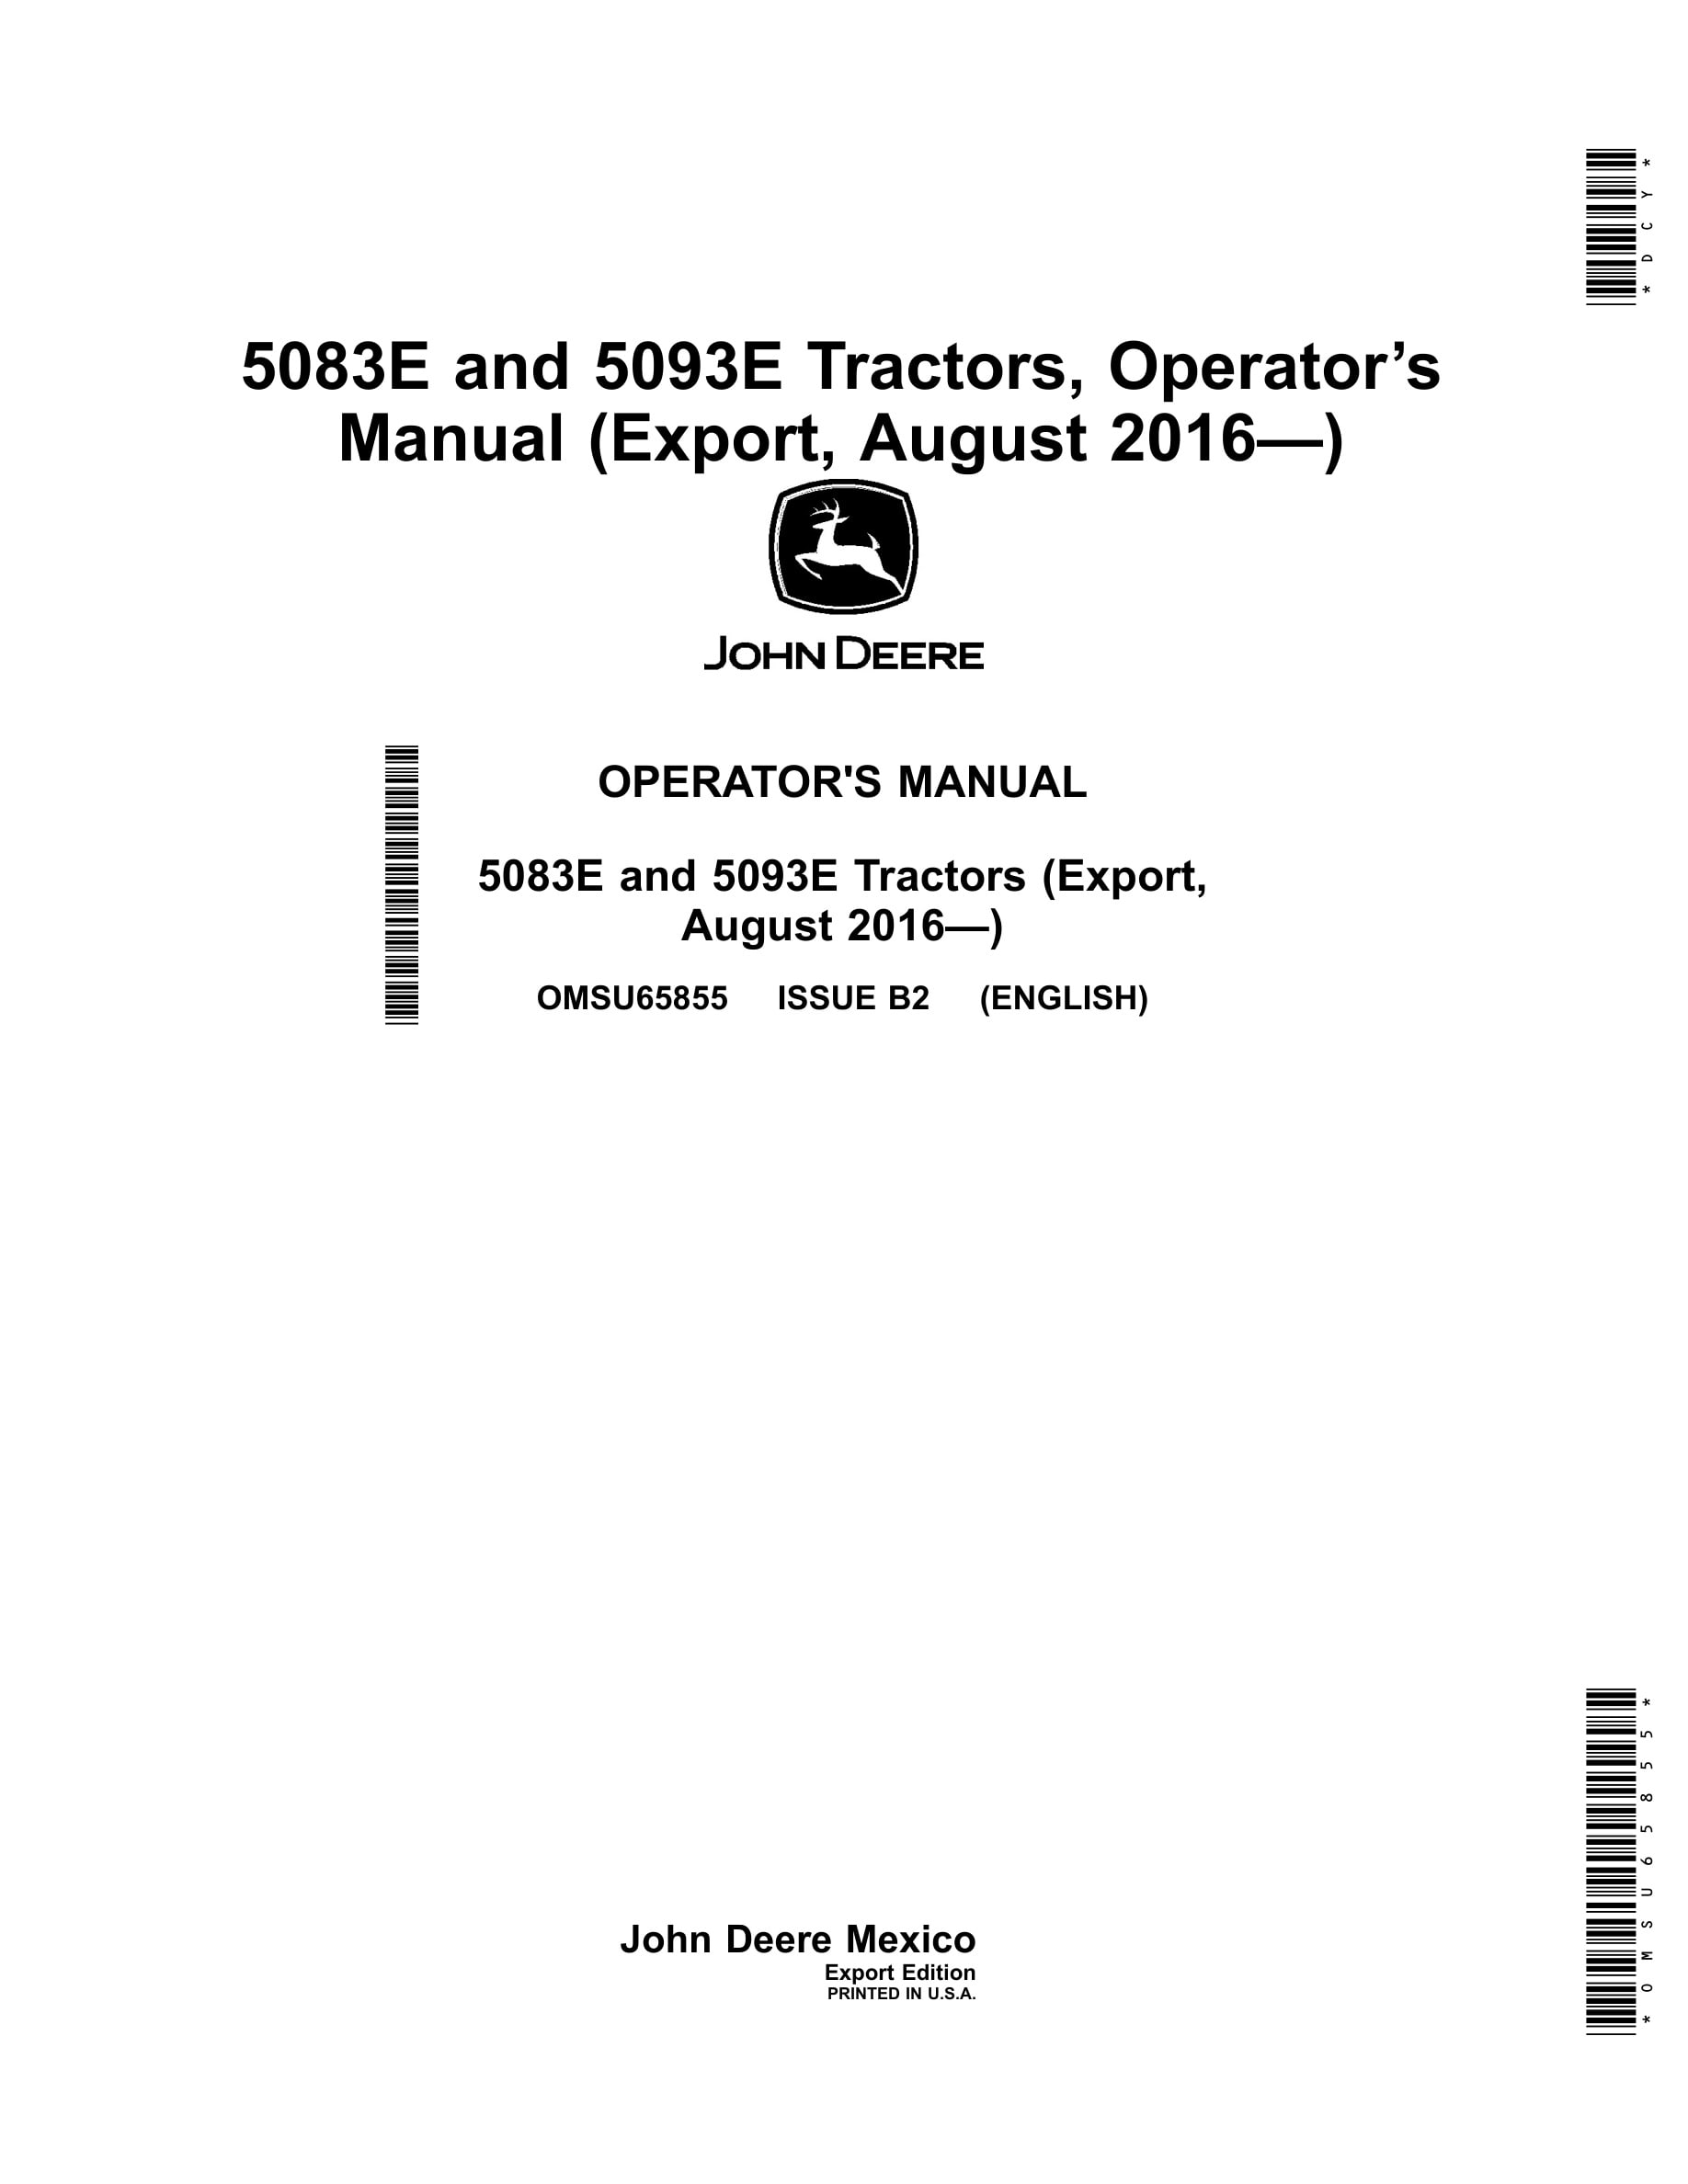 John Deere 5083e And 5093e Tractors Operator Manuals OMSU65855-1